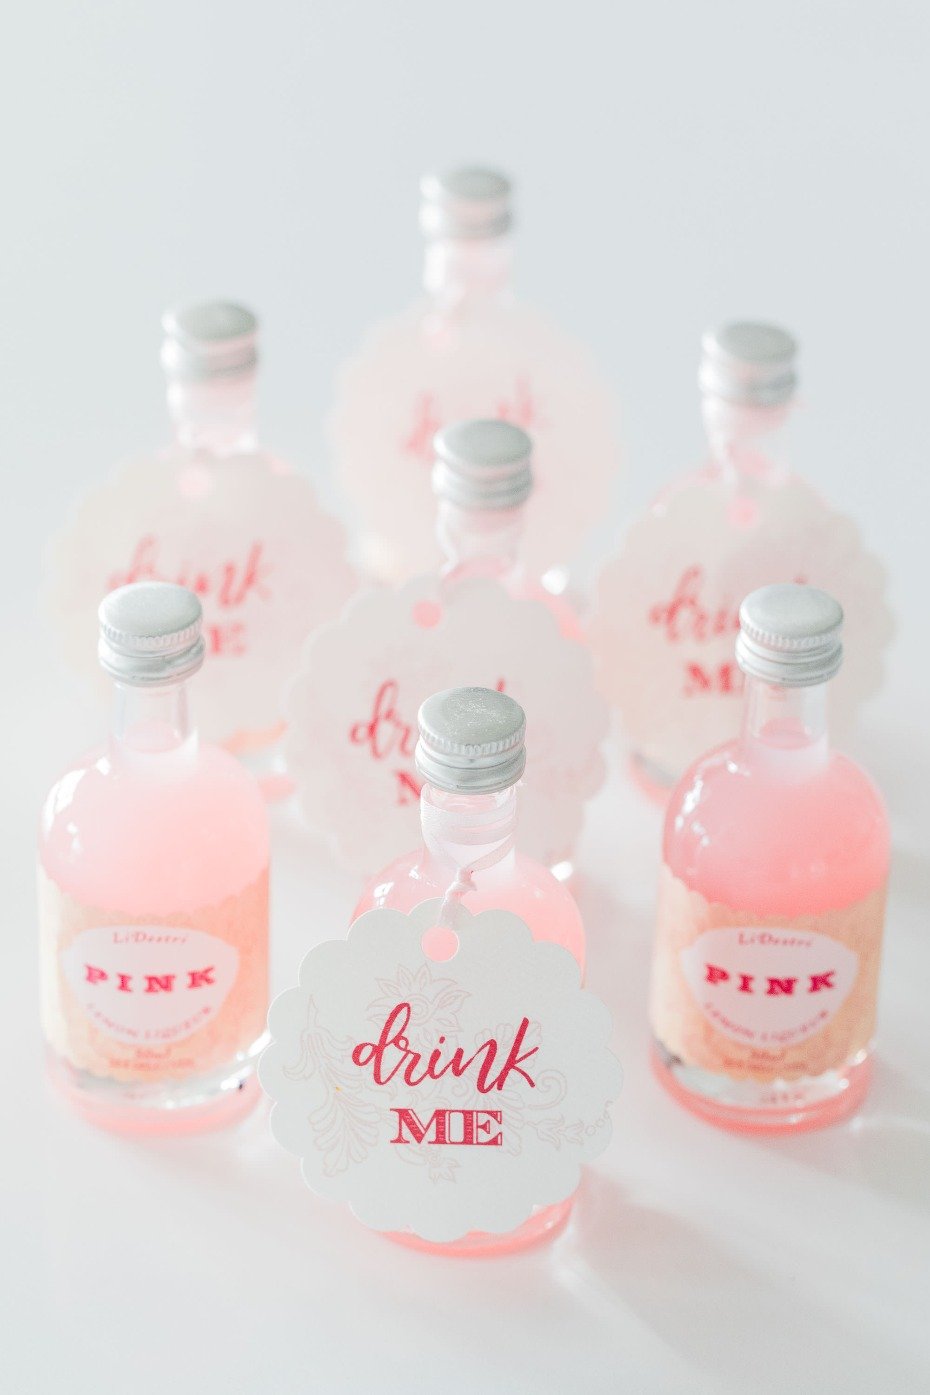 LiDestri Pink Lemon Liqueur